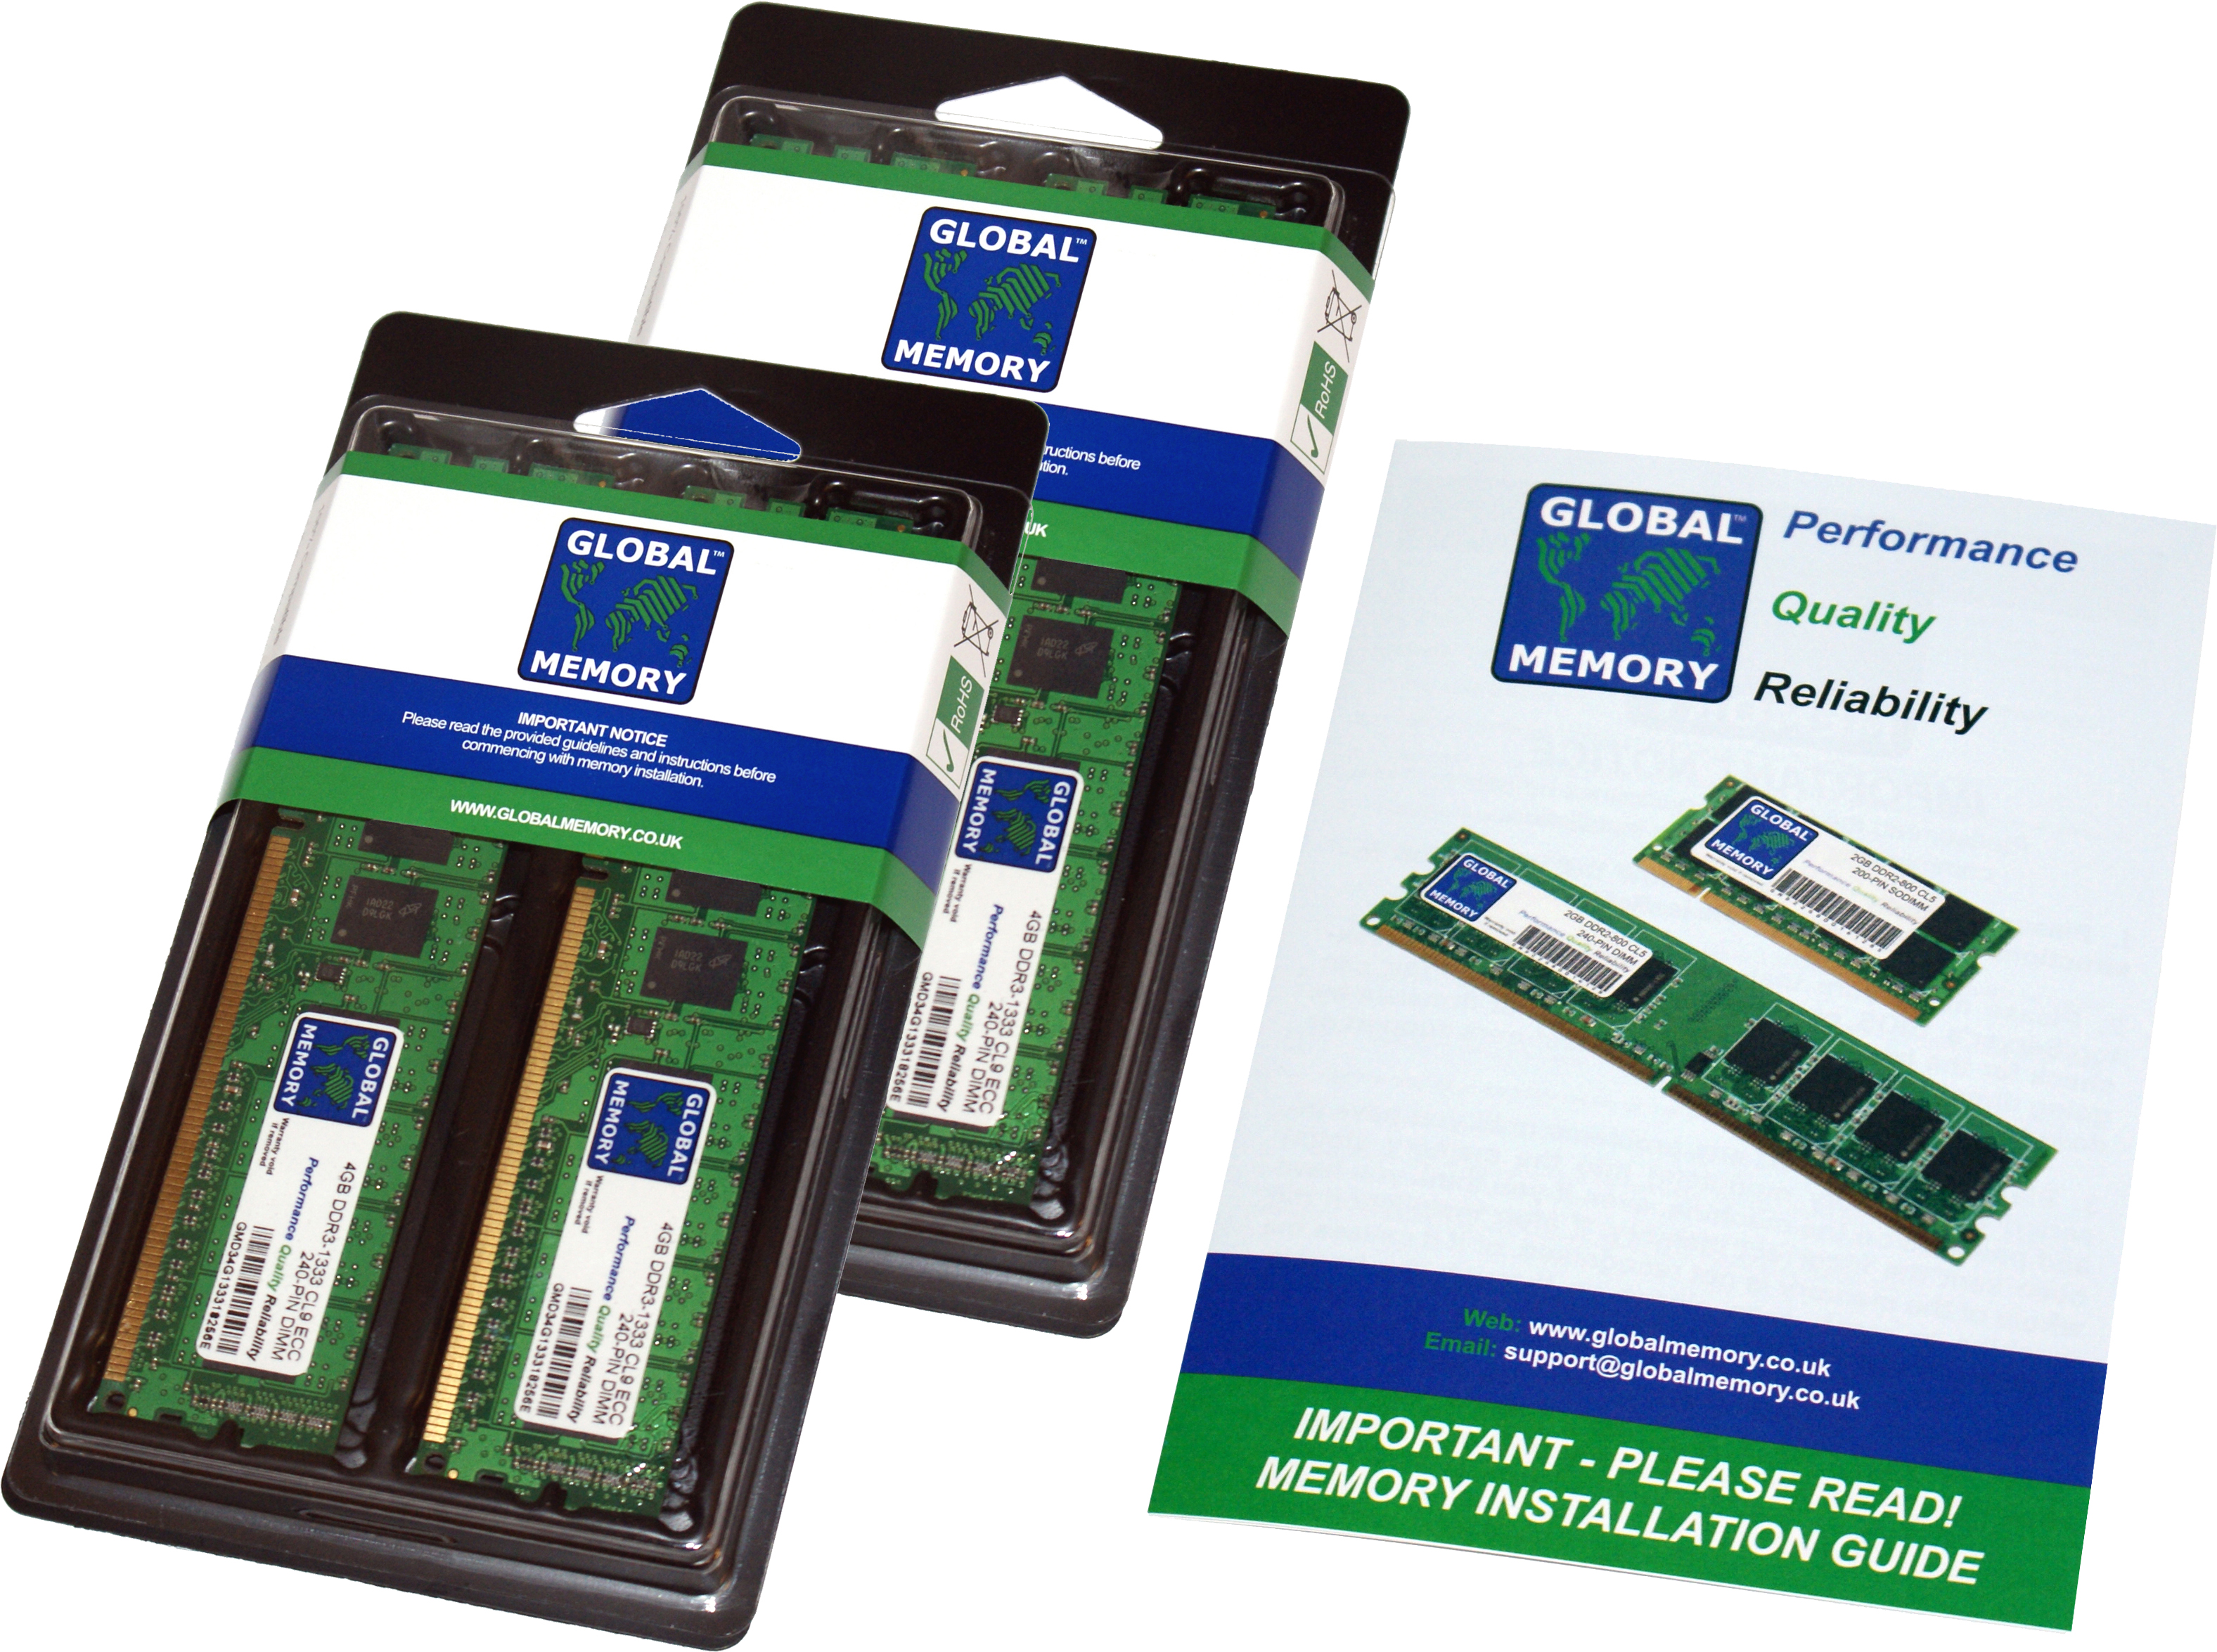 64GB (4 x 16GB) DDR4 2400MHz PC4-19200 288-PIN DIMM MEMORY RAM KIT FOR FUJITSU PC DESKTOPS